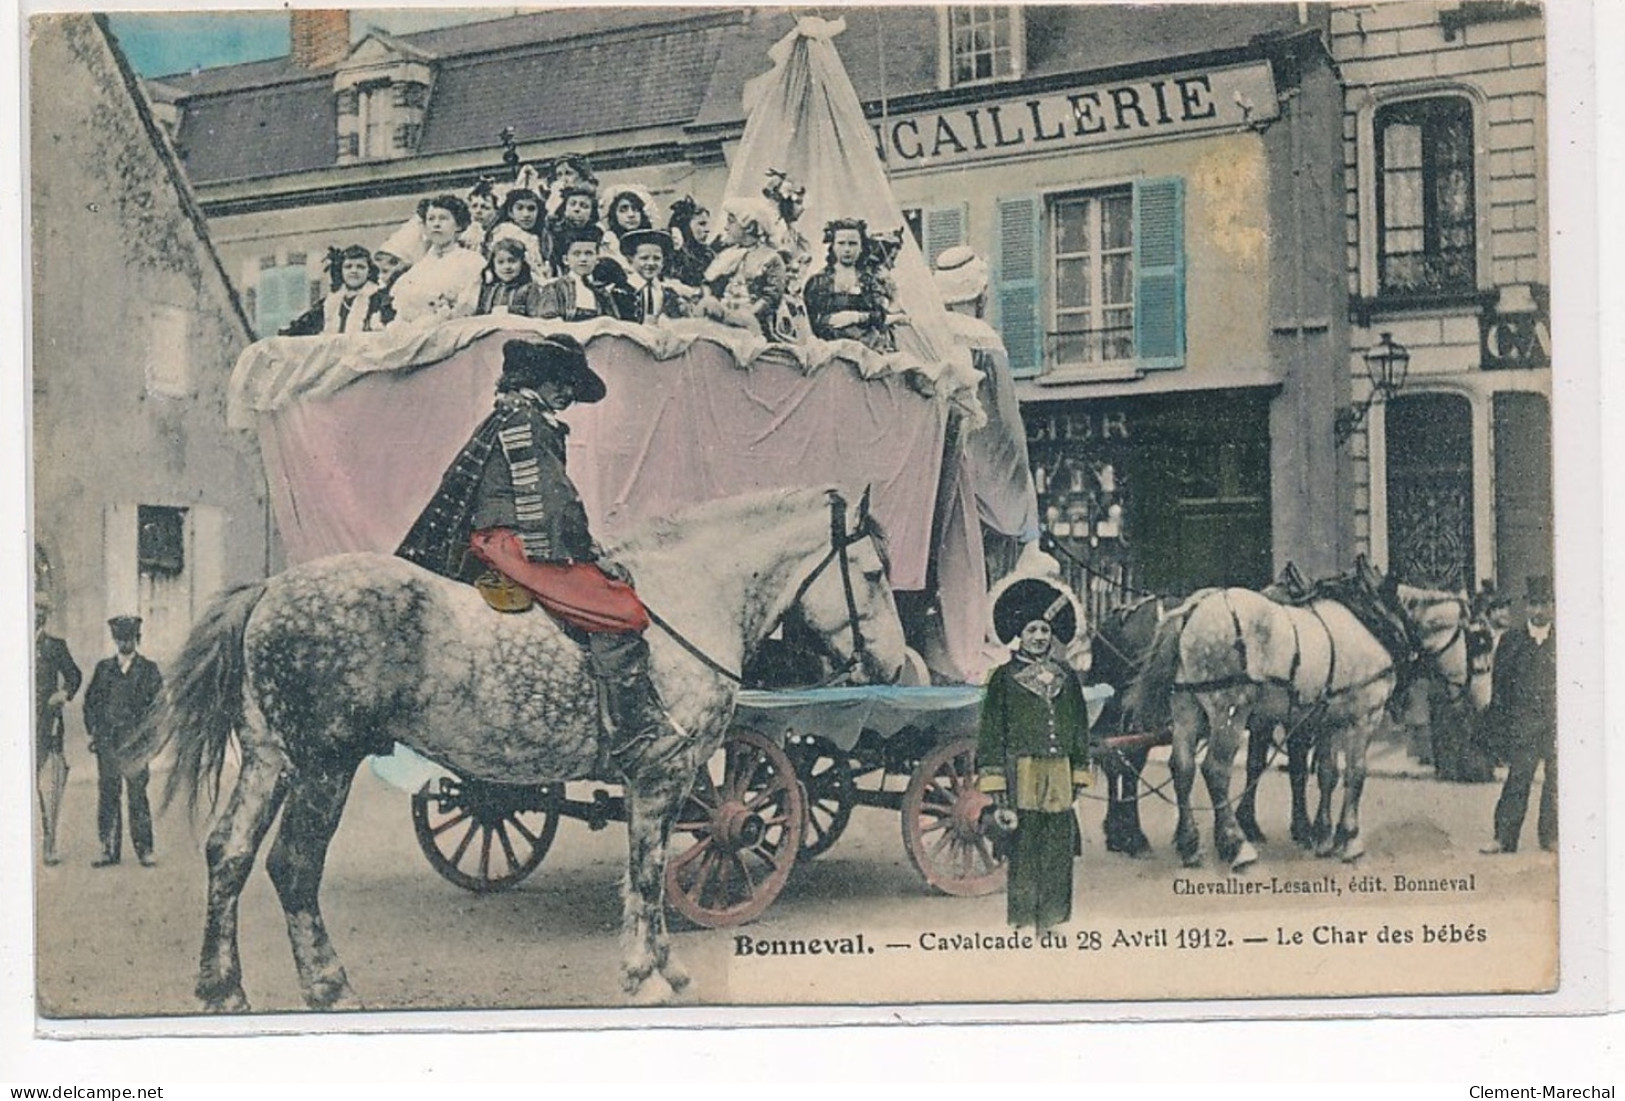 BONNEVAL : Cavalcade Du 28 Avril 1912 Le Char Des Bébés, Quincaillerie - Tres Bon Etat - Bonneval